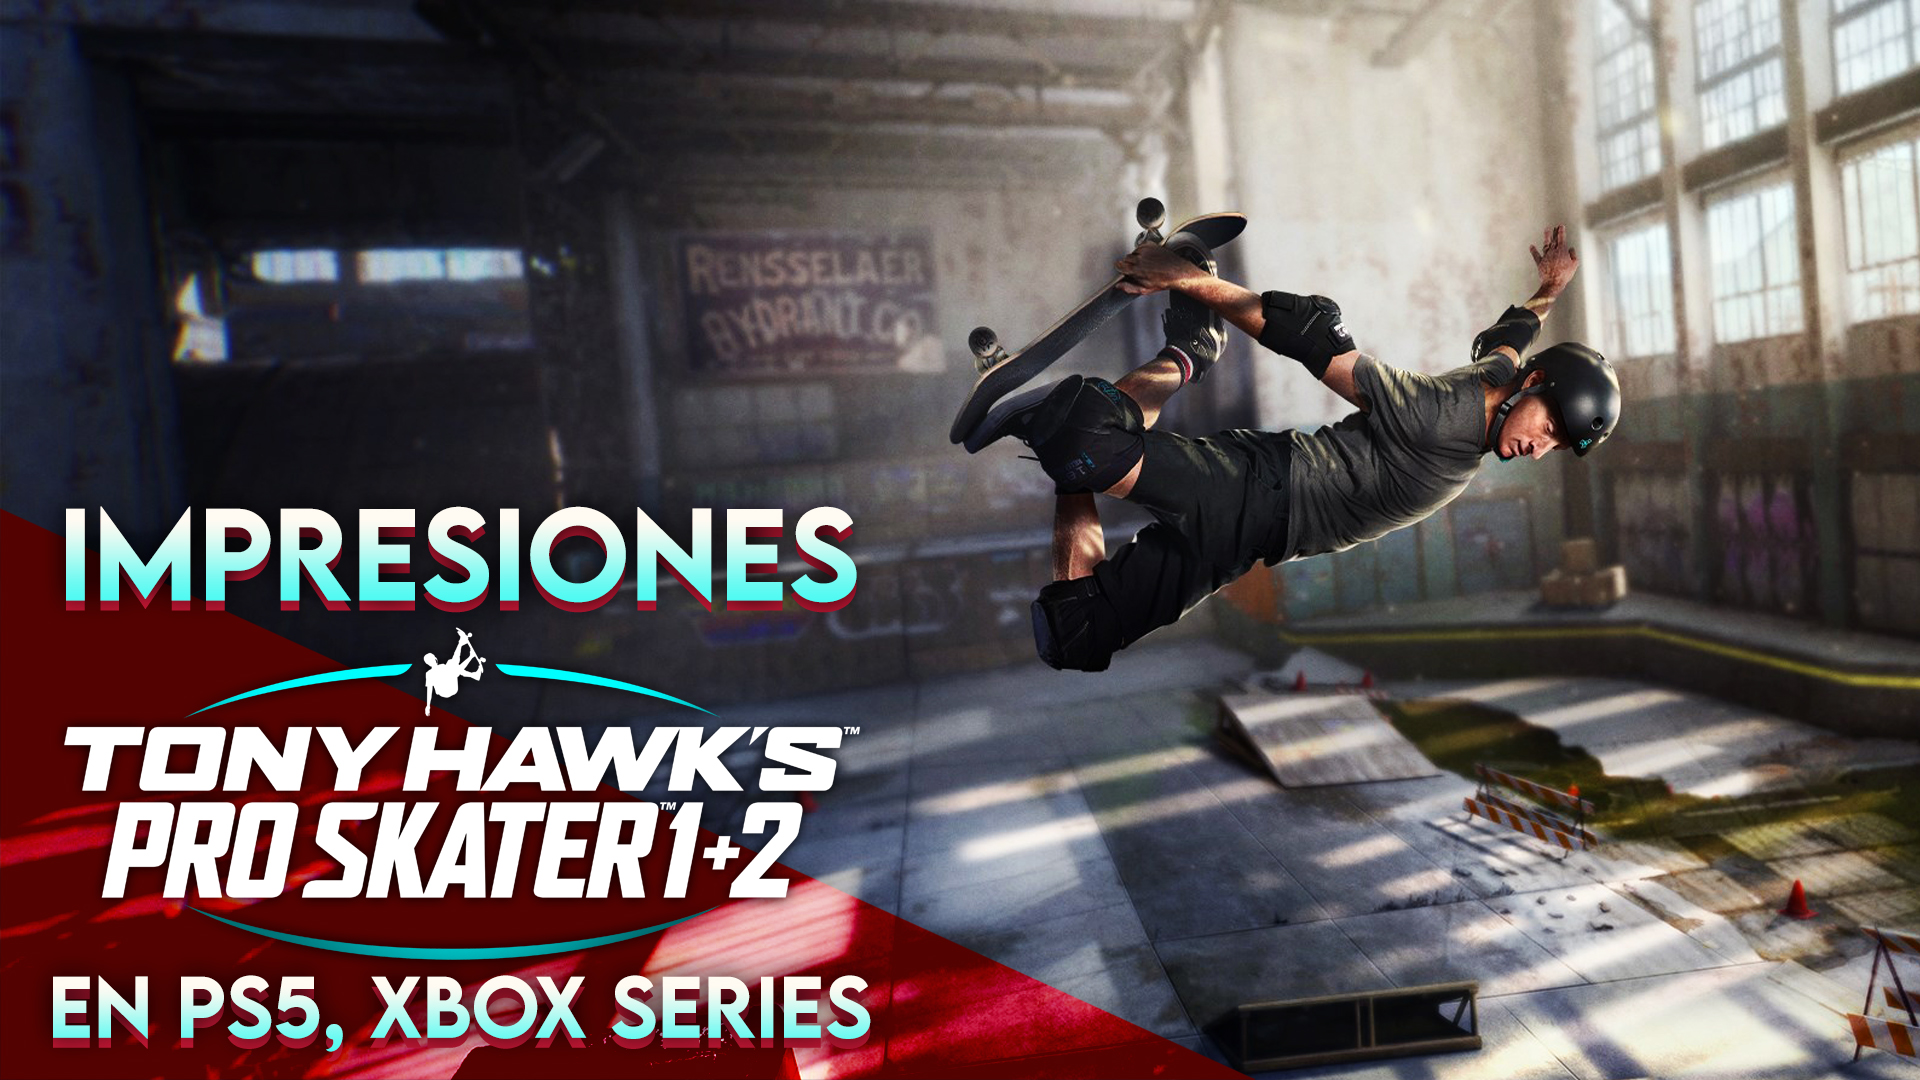 Impresiones Tony Hawk’s Pro Skater 1 + 2 en Xbox Series X y PS5